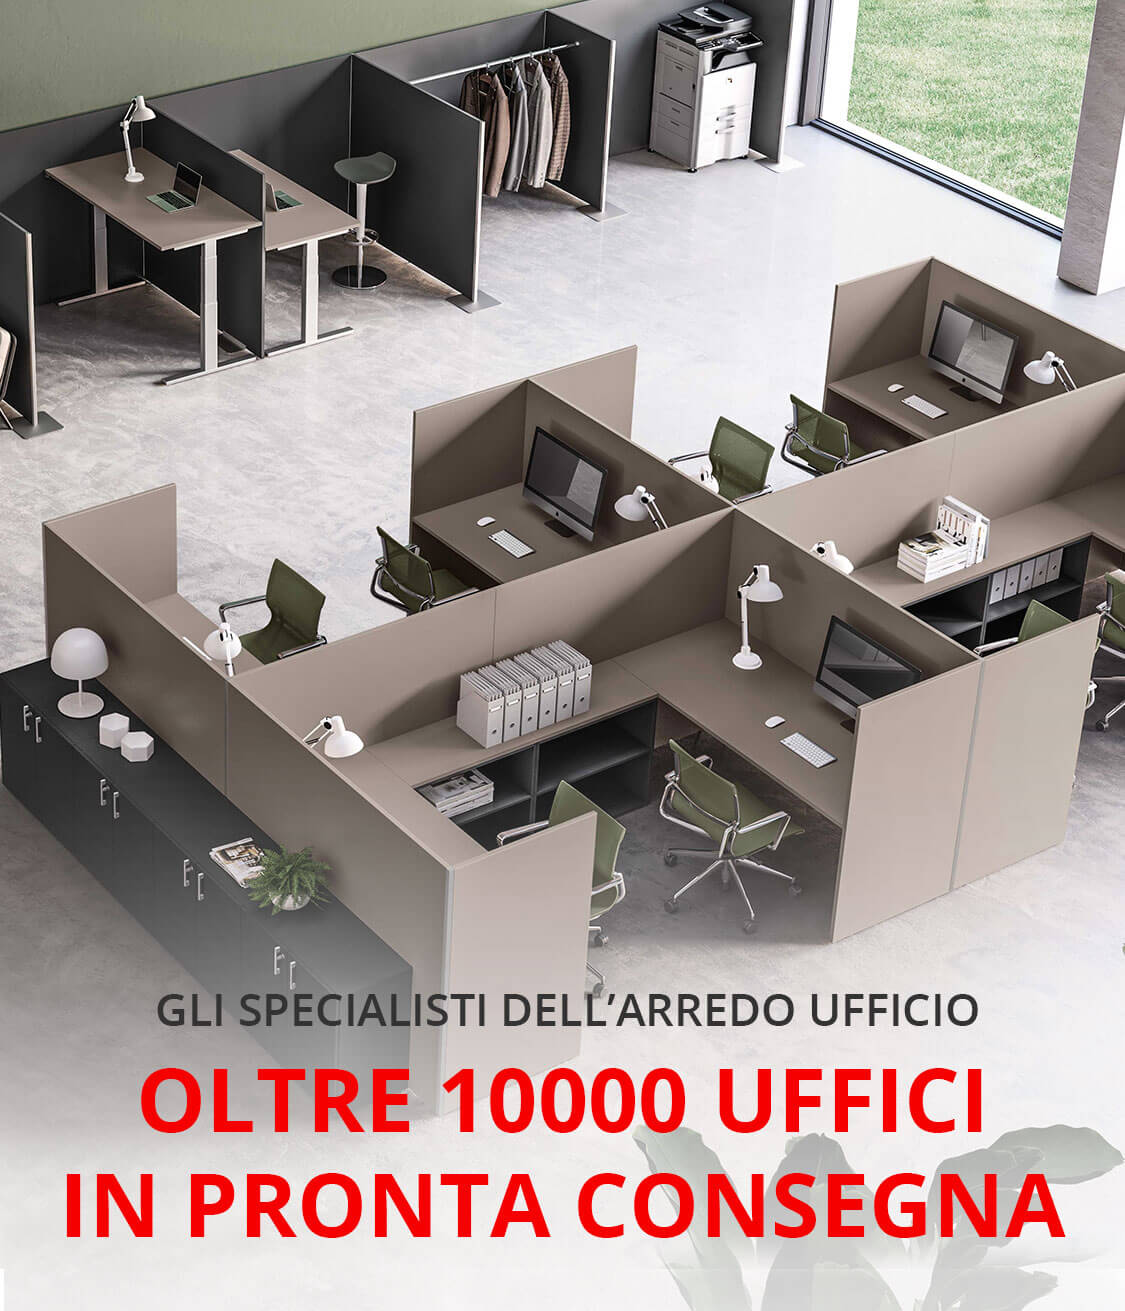 Office Planet - mobili per ufficio a Roma, Milano, Padova e nel